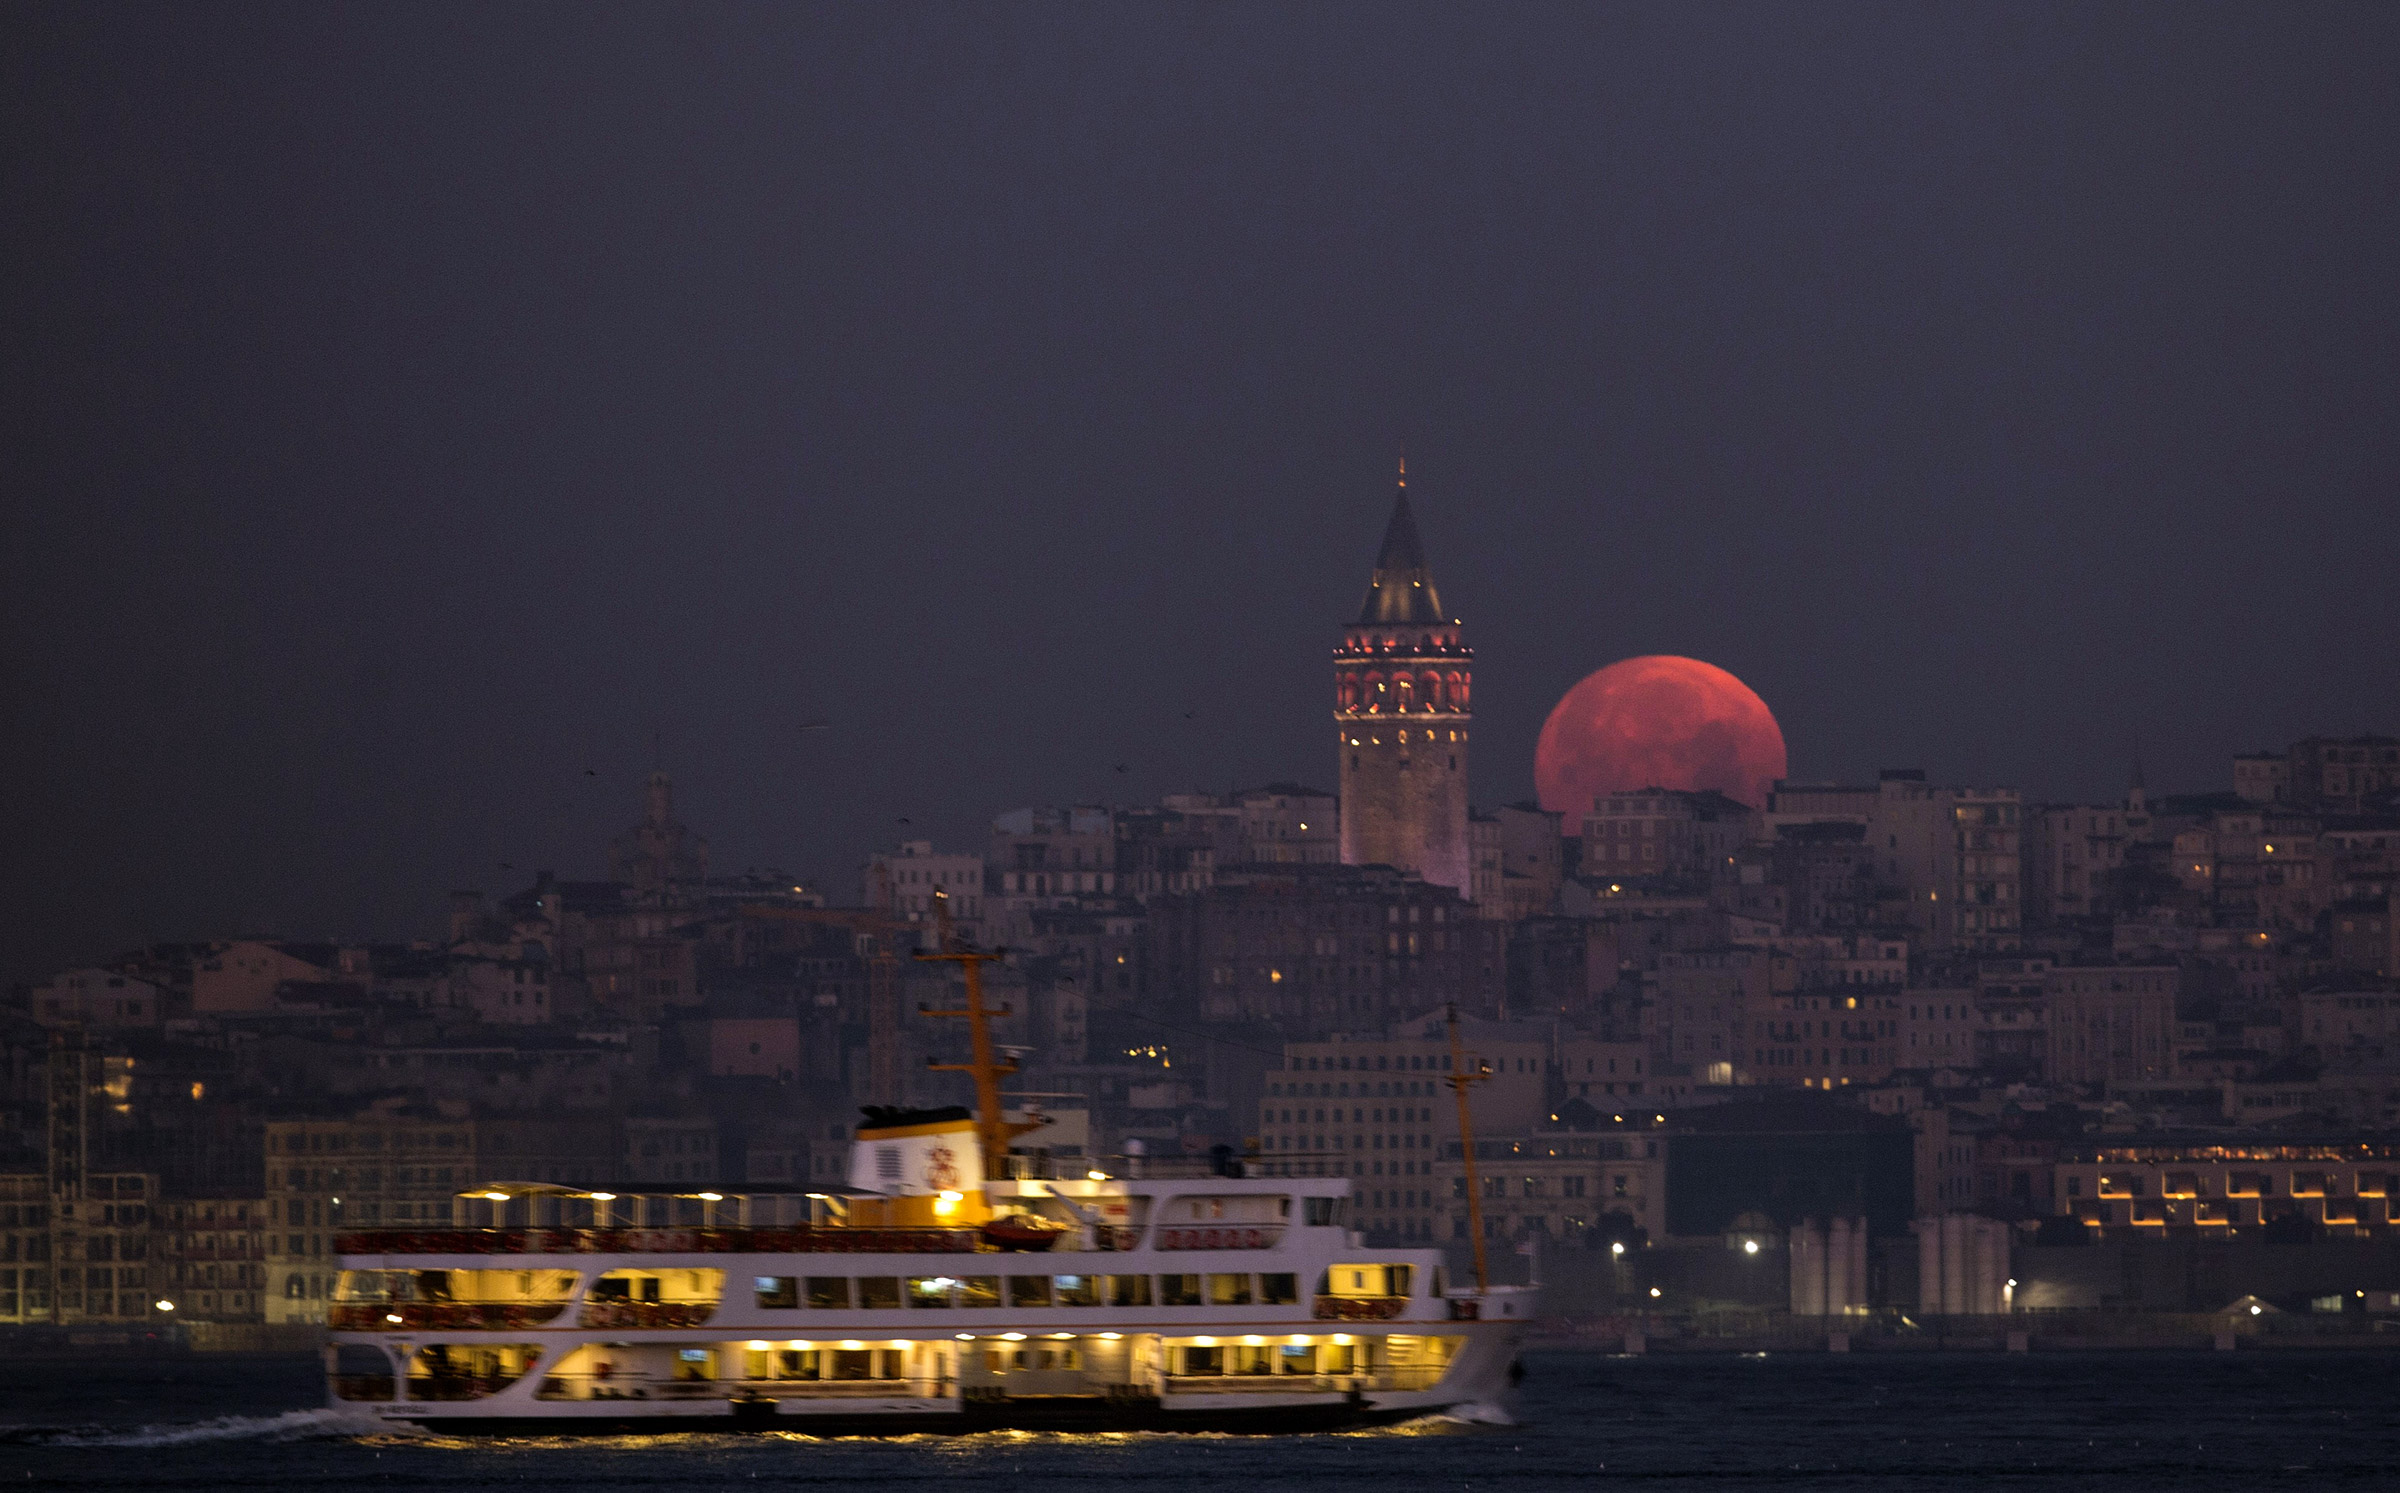 Луна поднимается в небо рядом с Галатской башней, возвышающейся над европейской частью Стамбула.
